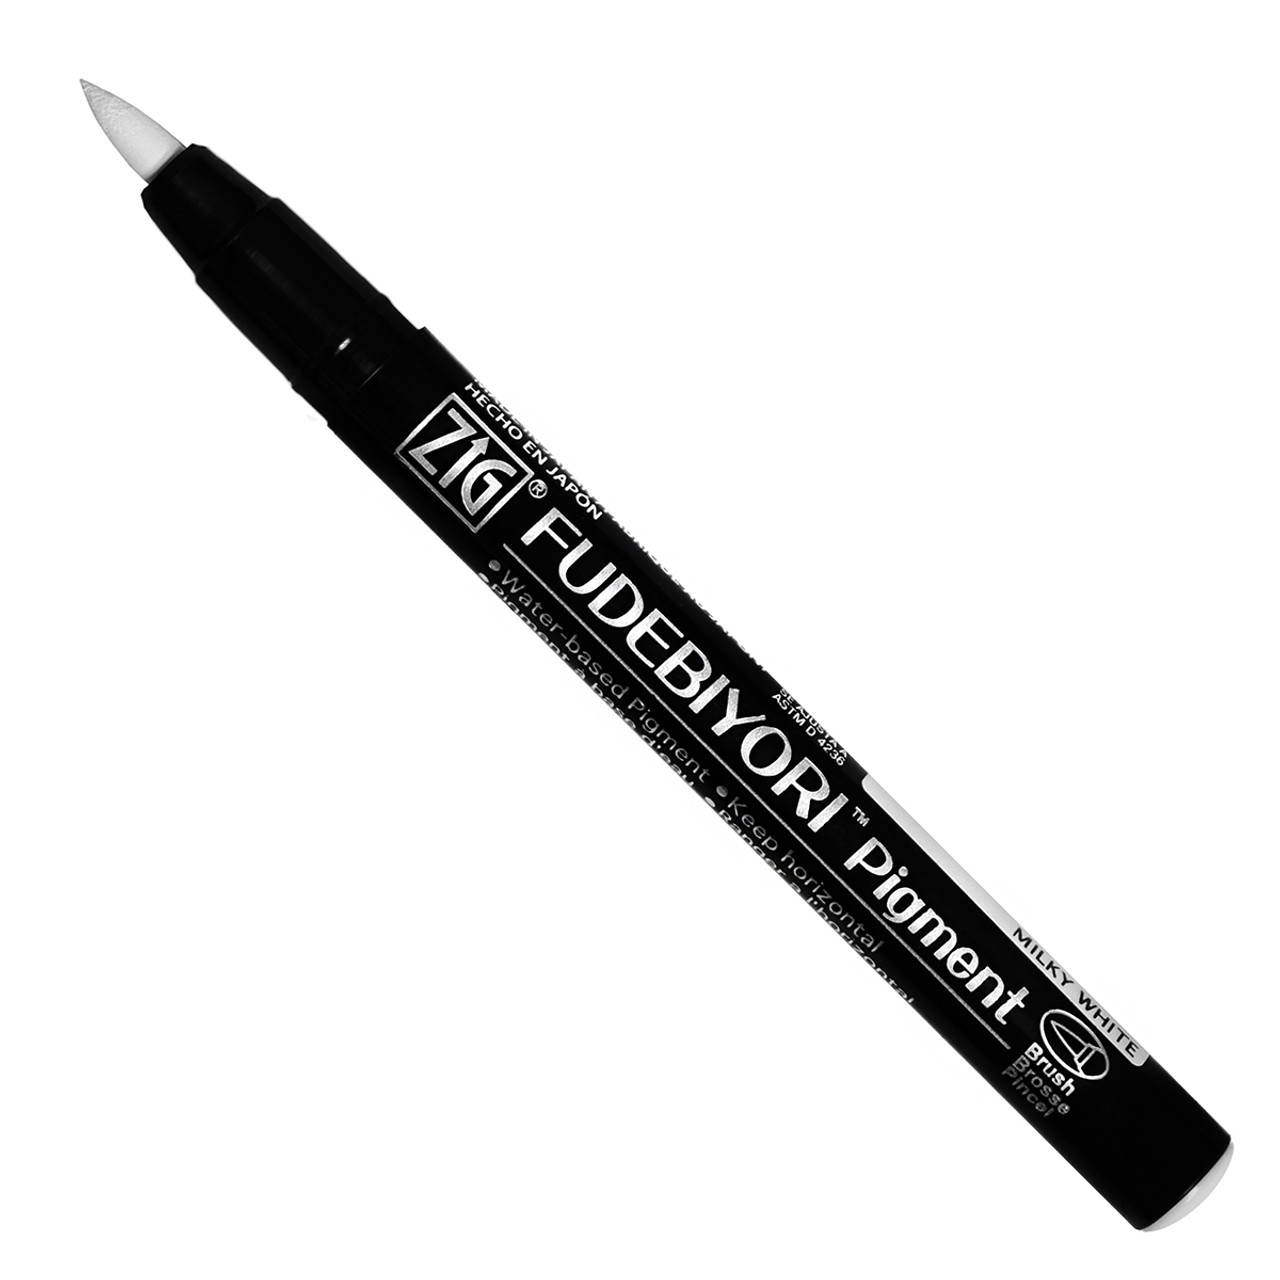 White Highlighter Pen, Oil-based Marker, Doodling, Art Students